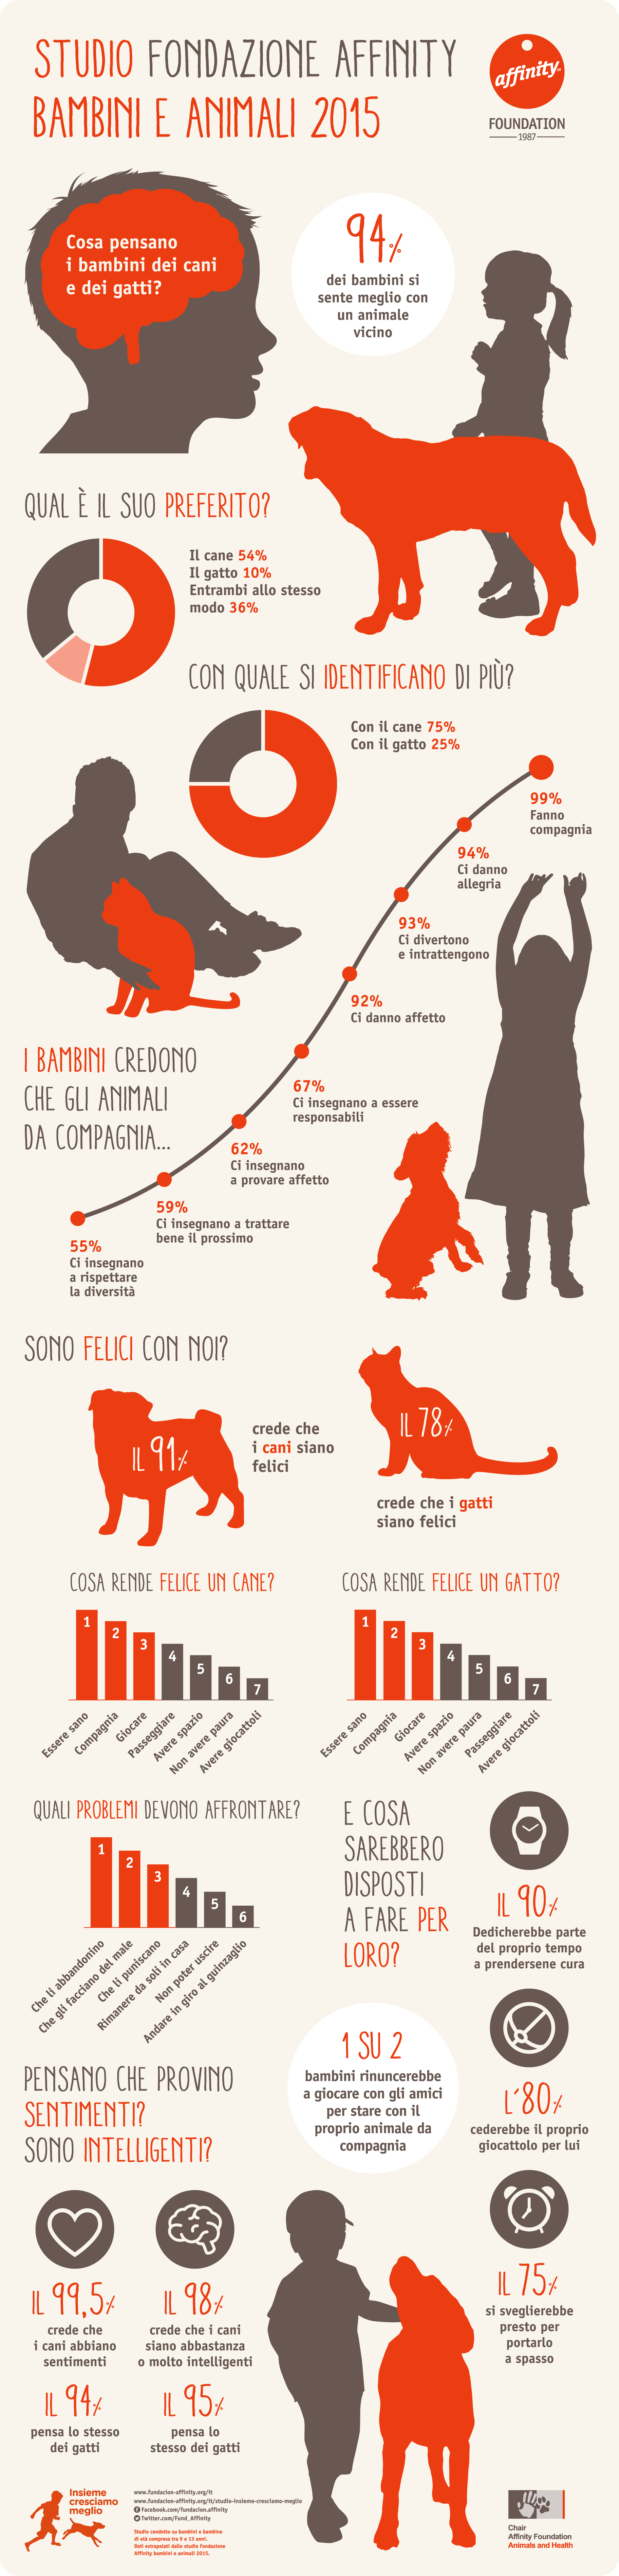 Infografica dello Studio Fondazione Affinity bambini e animali 2015